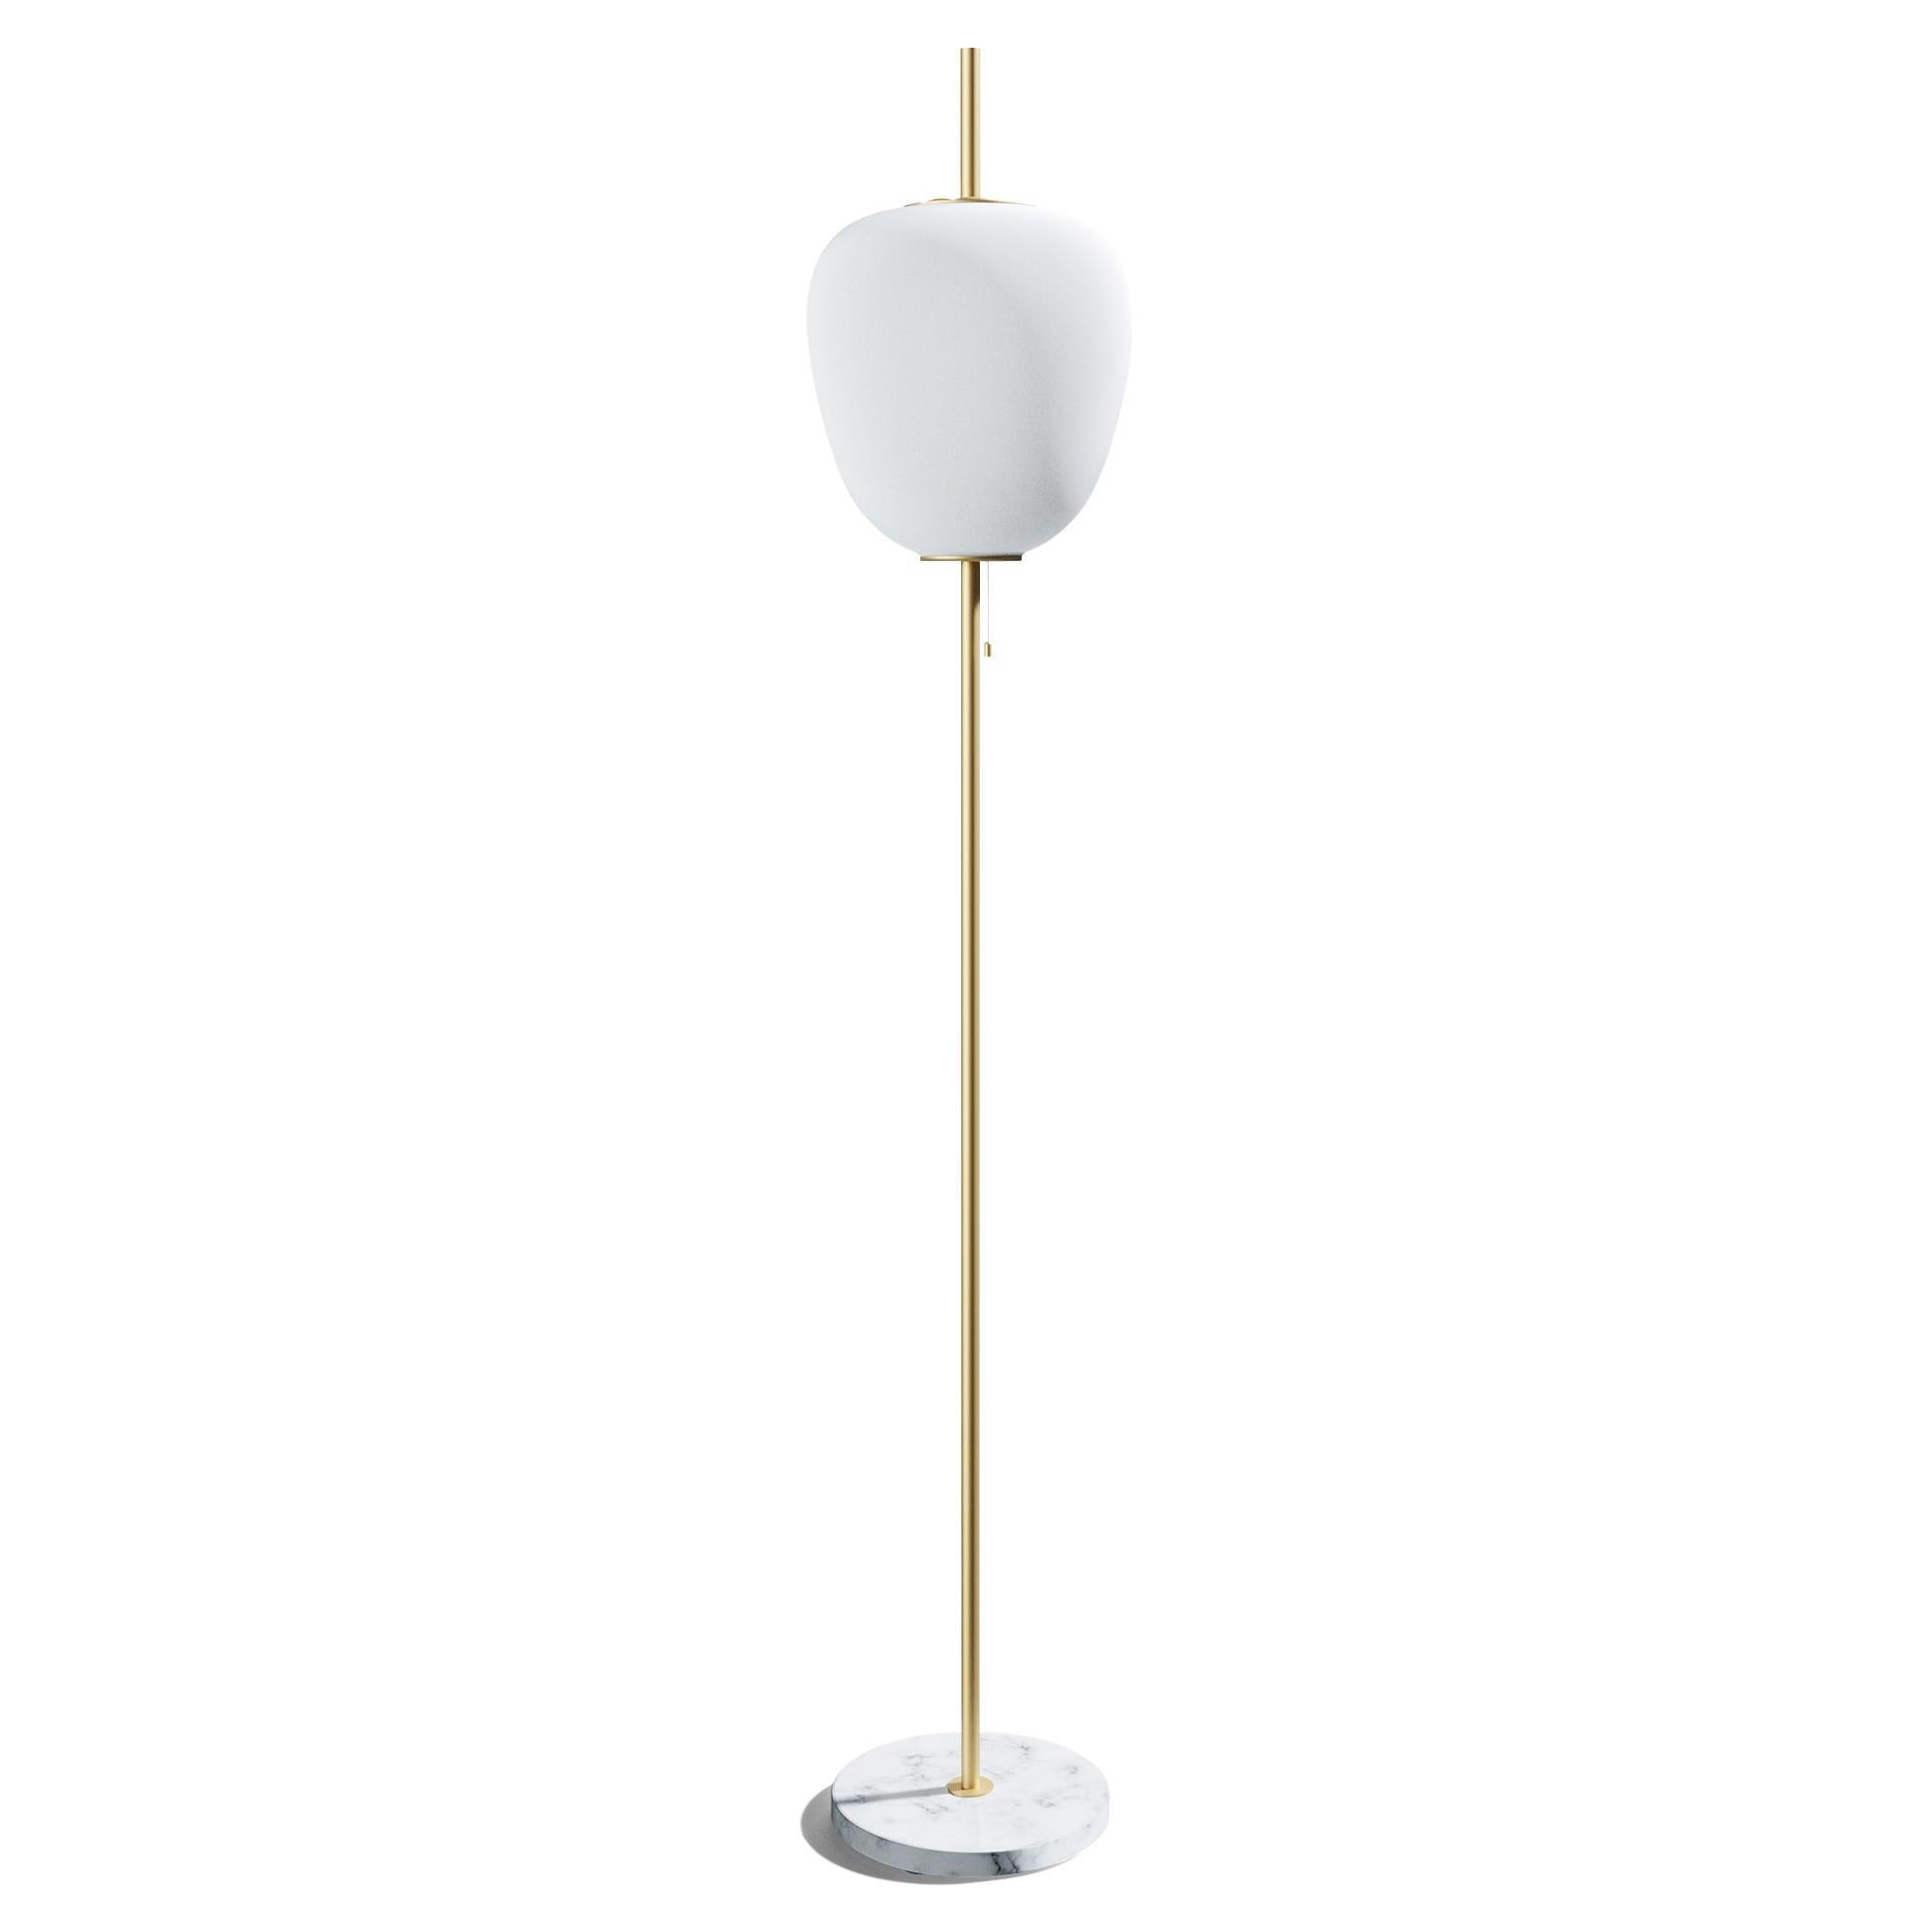 Golden Brass Tall J14 Floor Lamp by Disderot